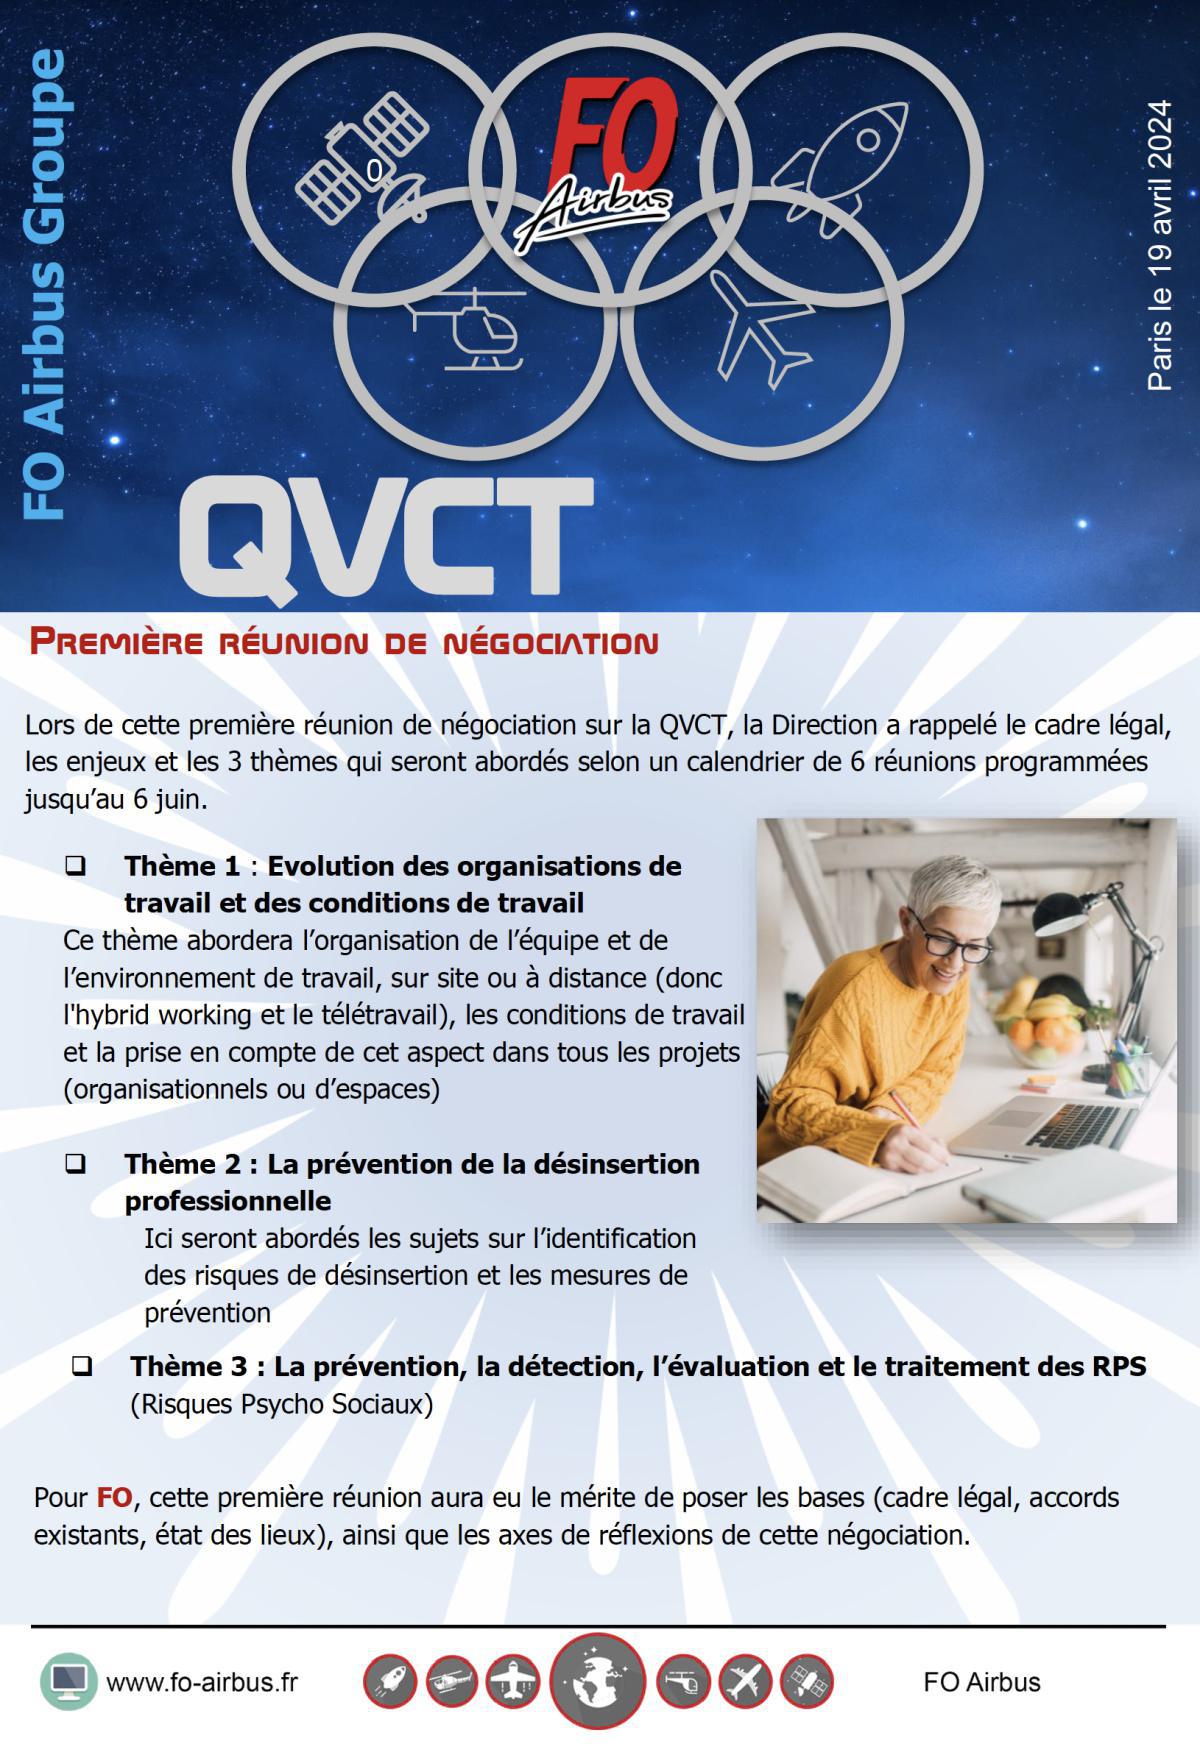 QVTC : première réunion de négociation